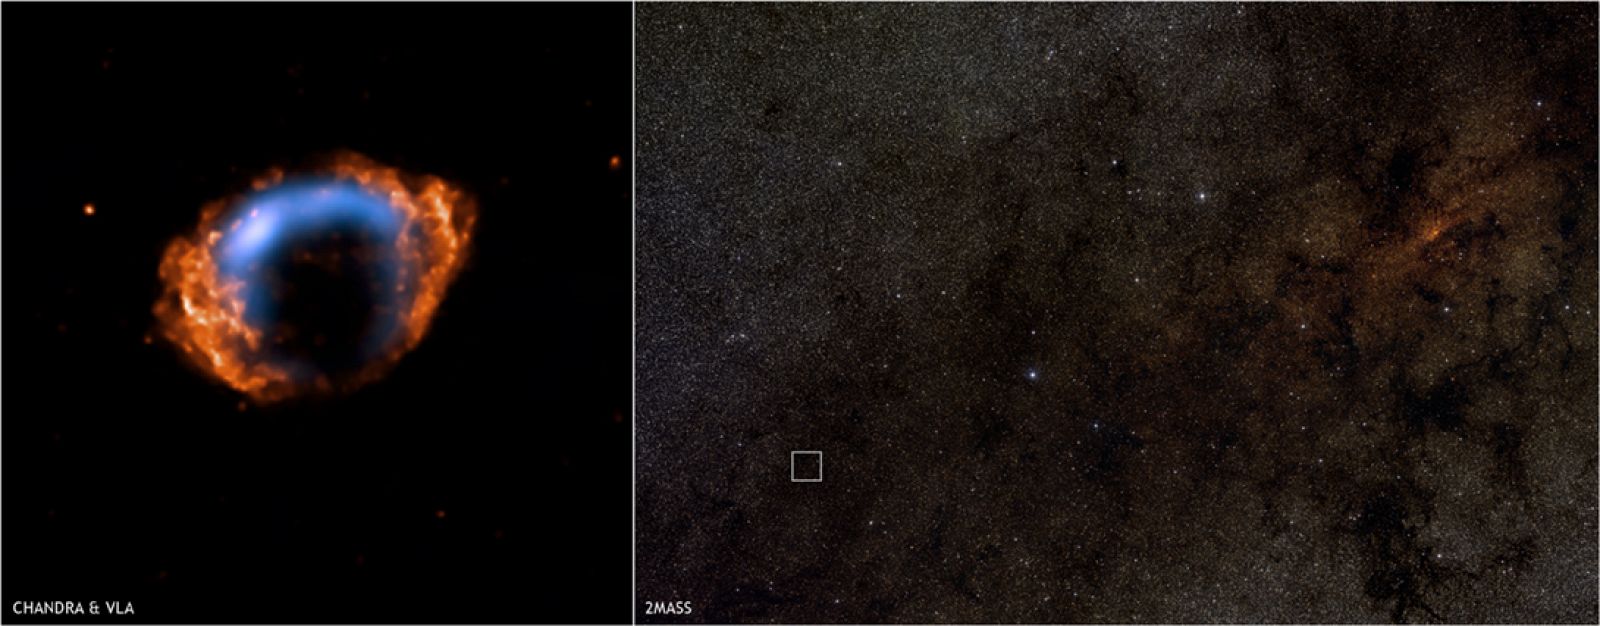 La supernova G. 1.9+0.3 solo tiene 140 años y la buscaban desde hace dos décadas.